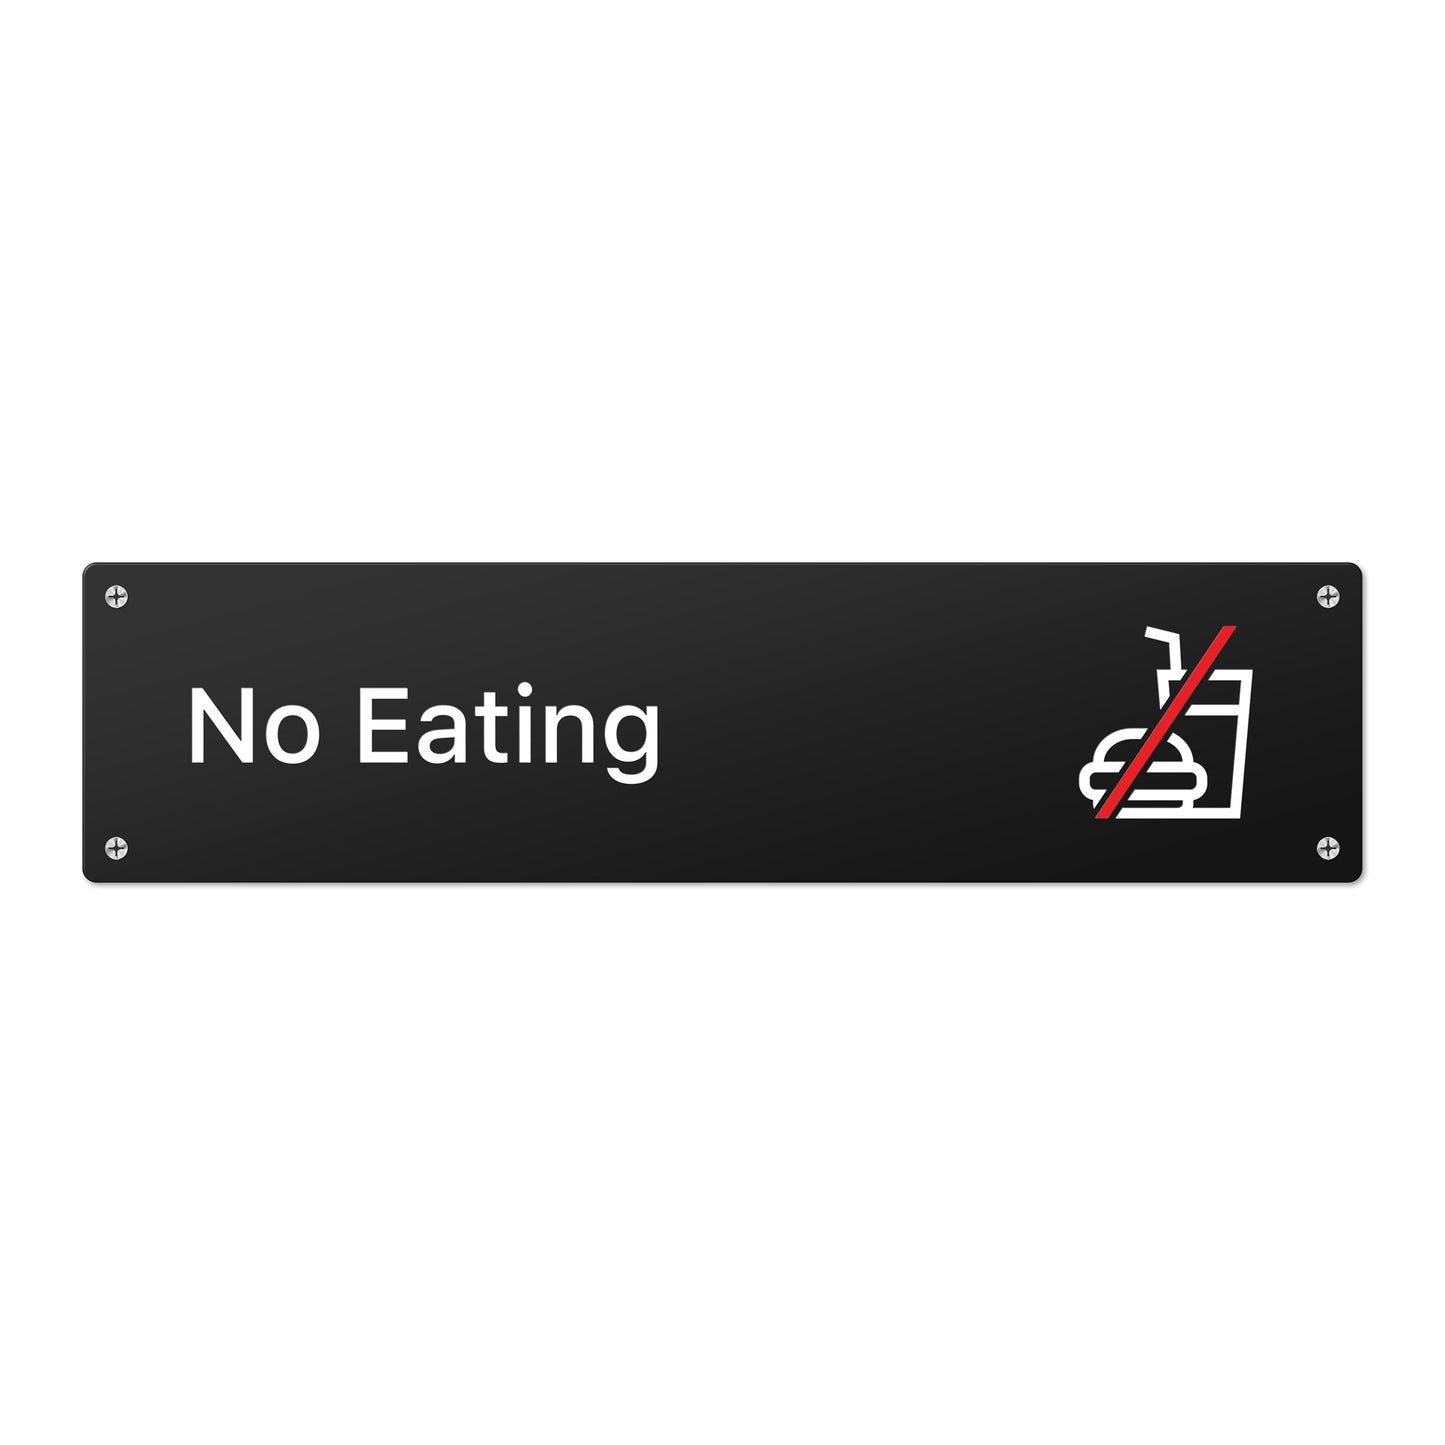 No Eating